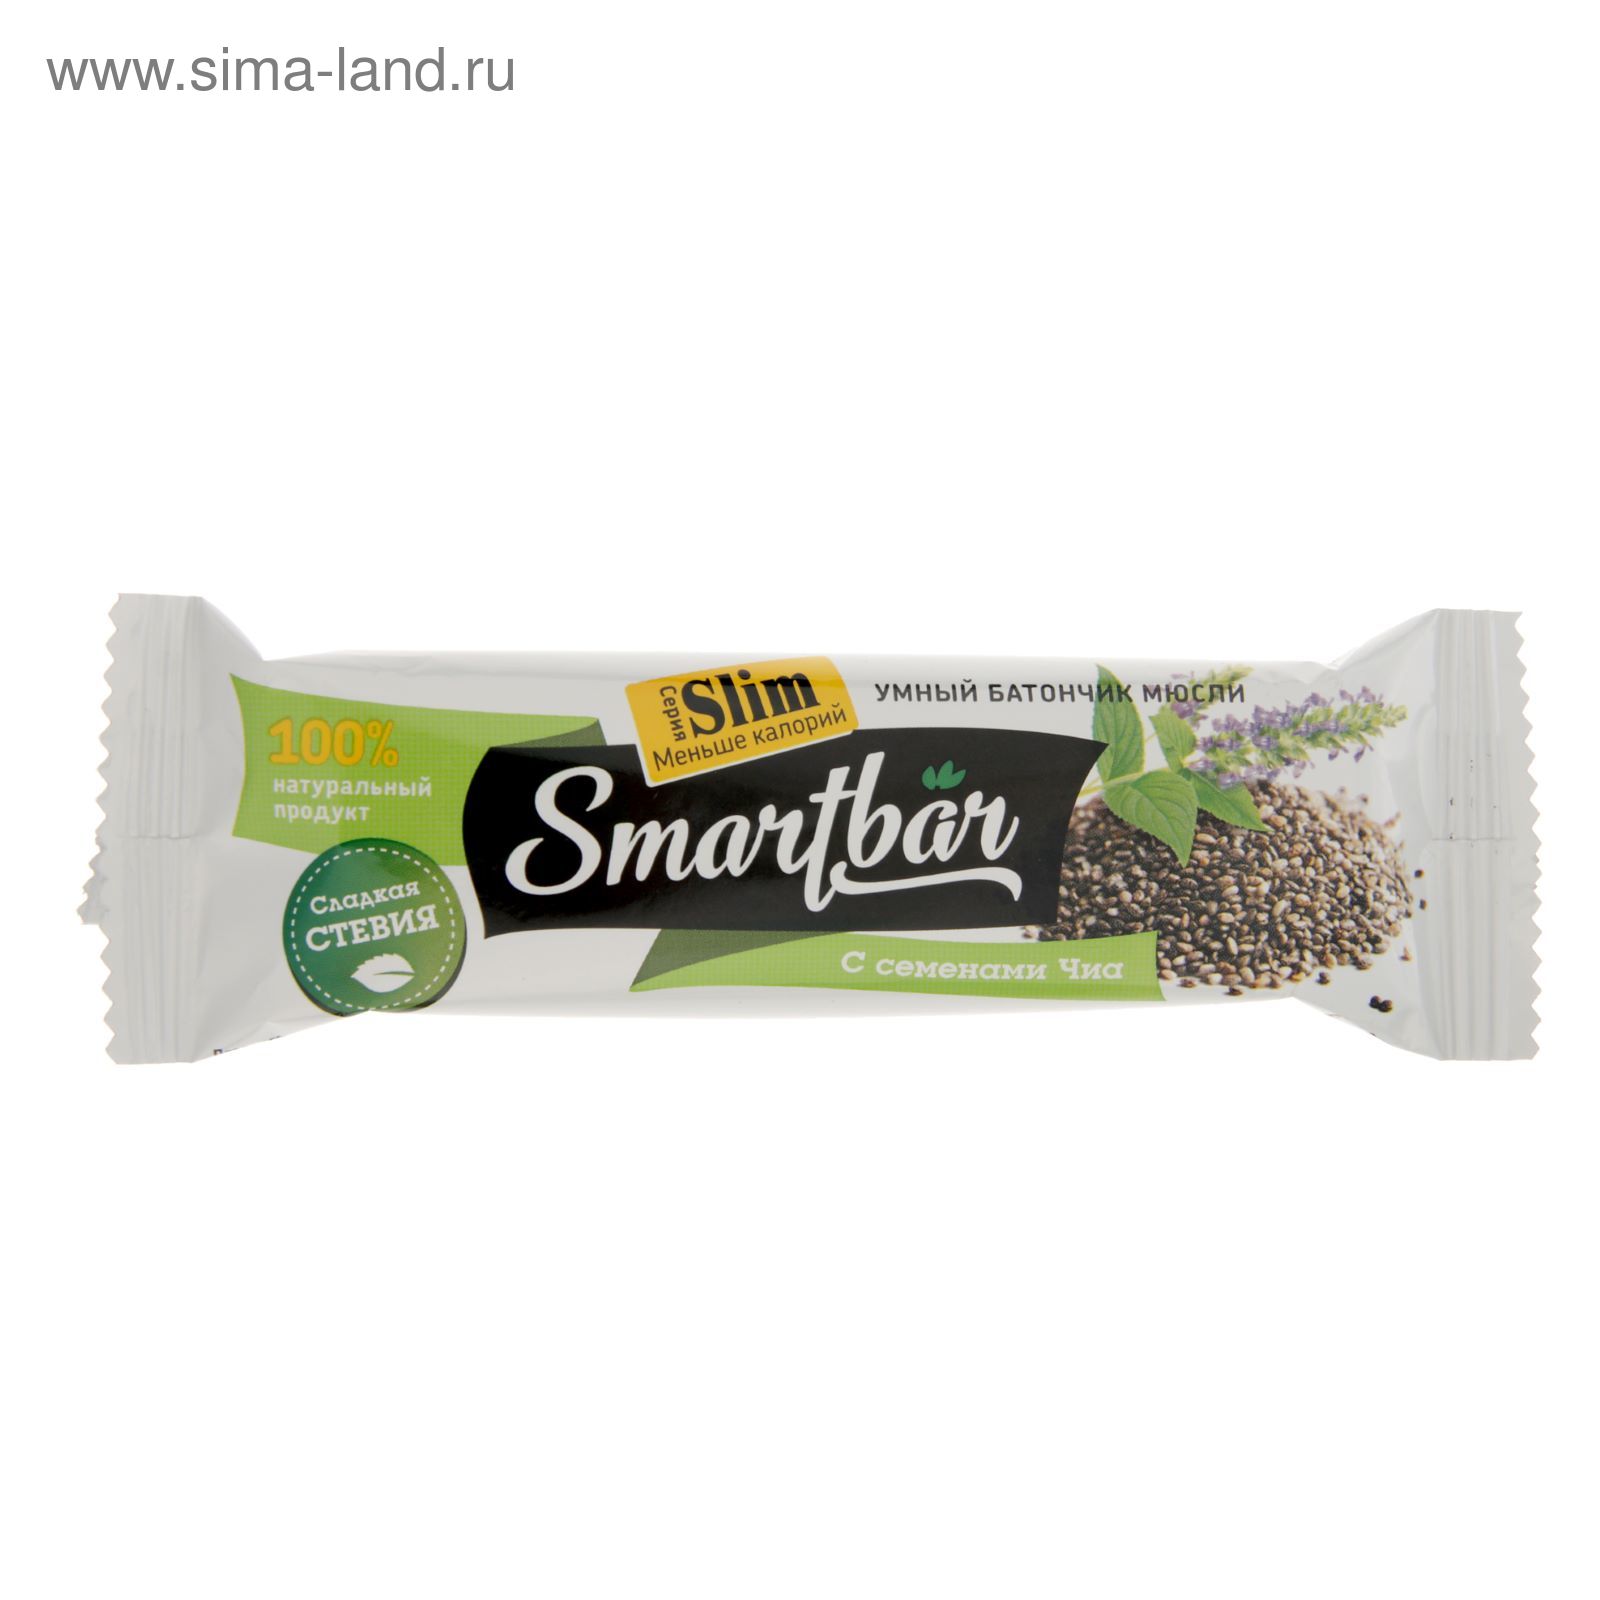 Батончик SmartBar Slim 25г семена чиа